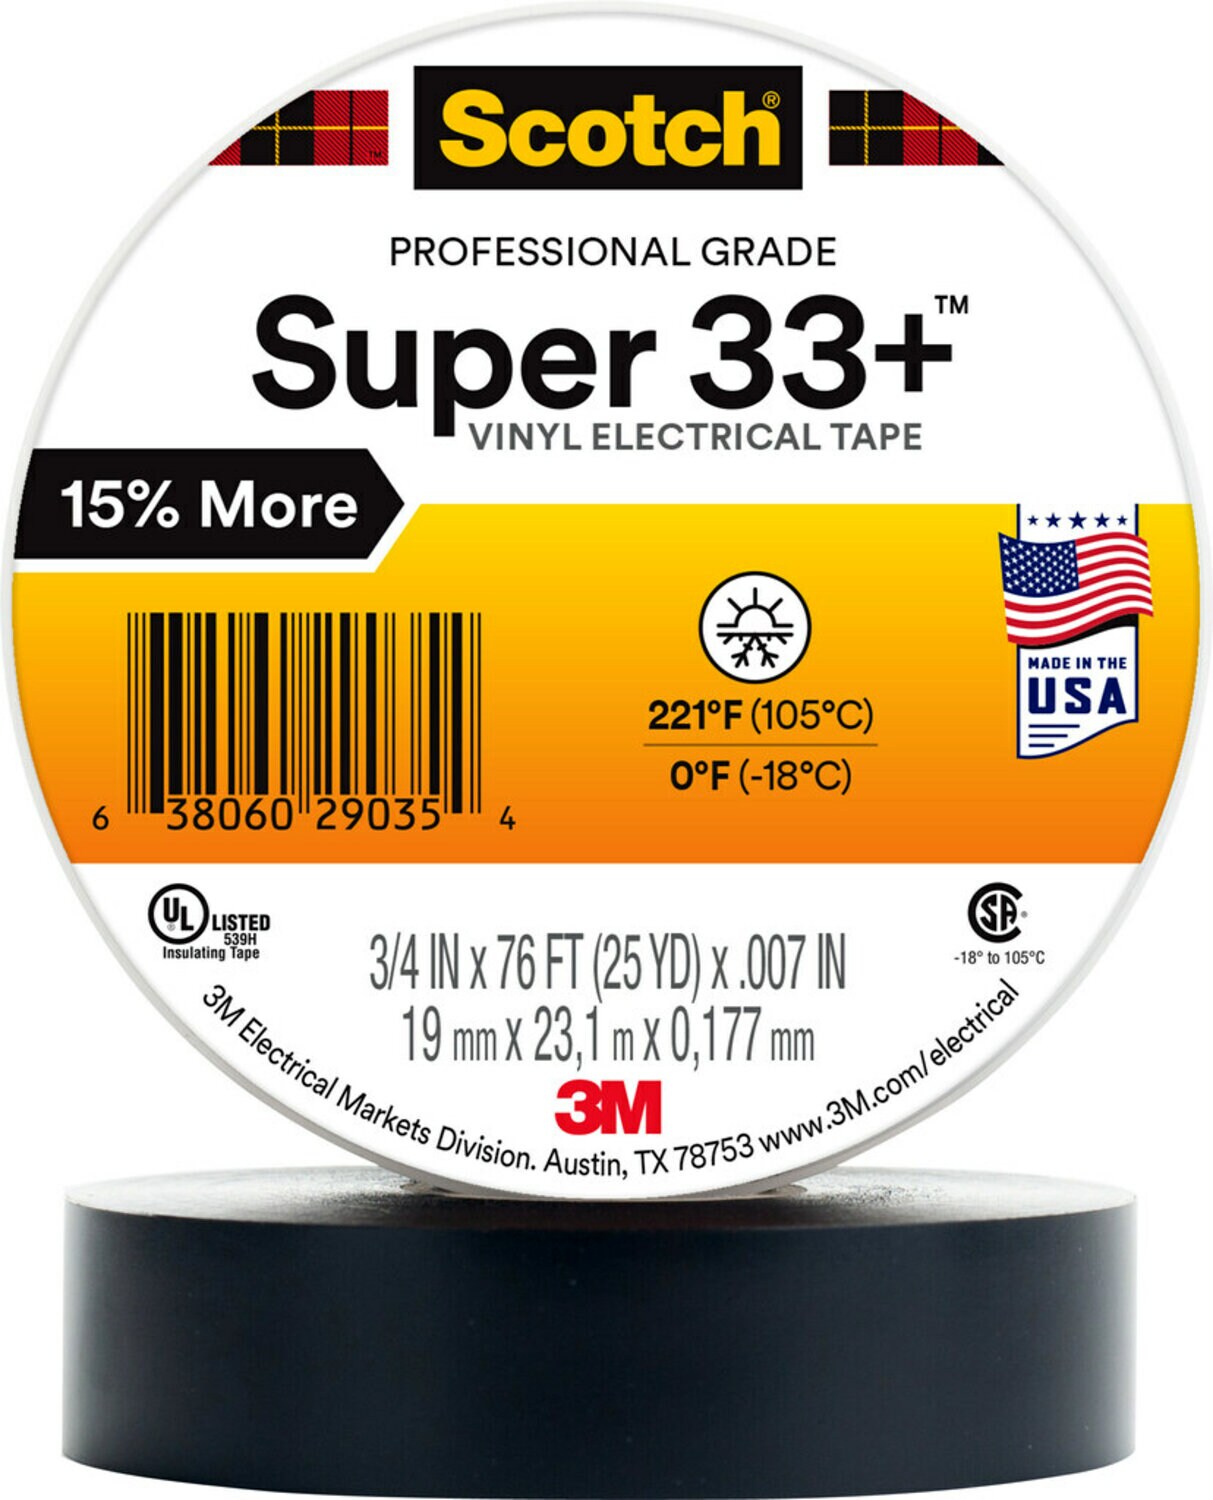 7000058808 - Scotch Super 33+ Vinyl Electrical Tape, 2 in X 36 yd, 1 in Core, Black,
1 roll/carton, 25 rolls/Case